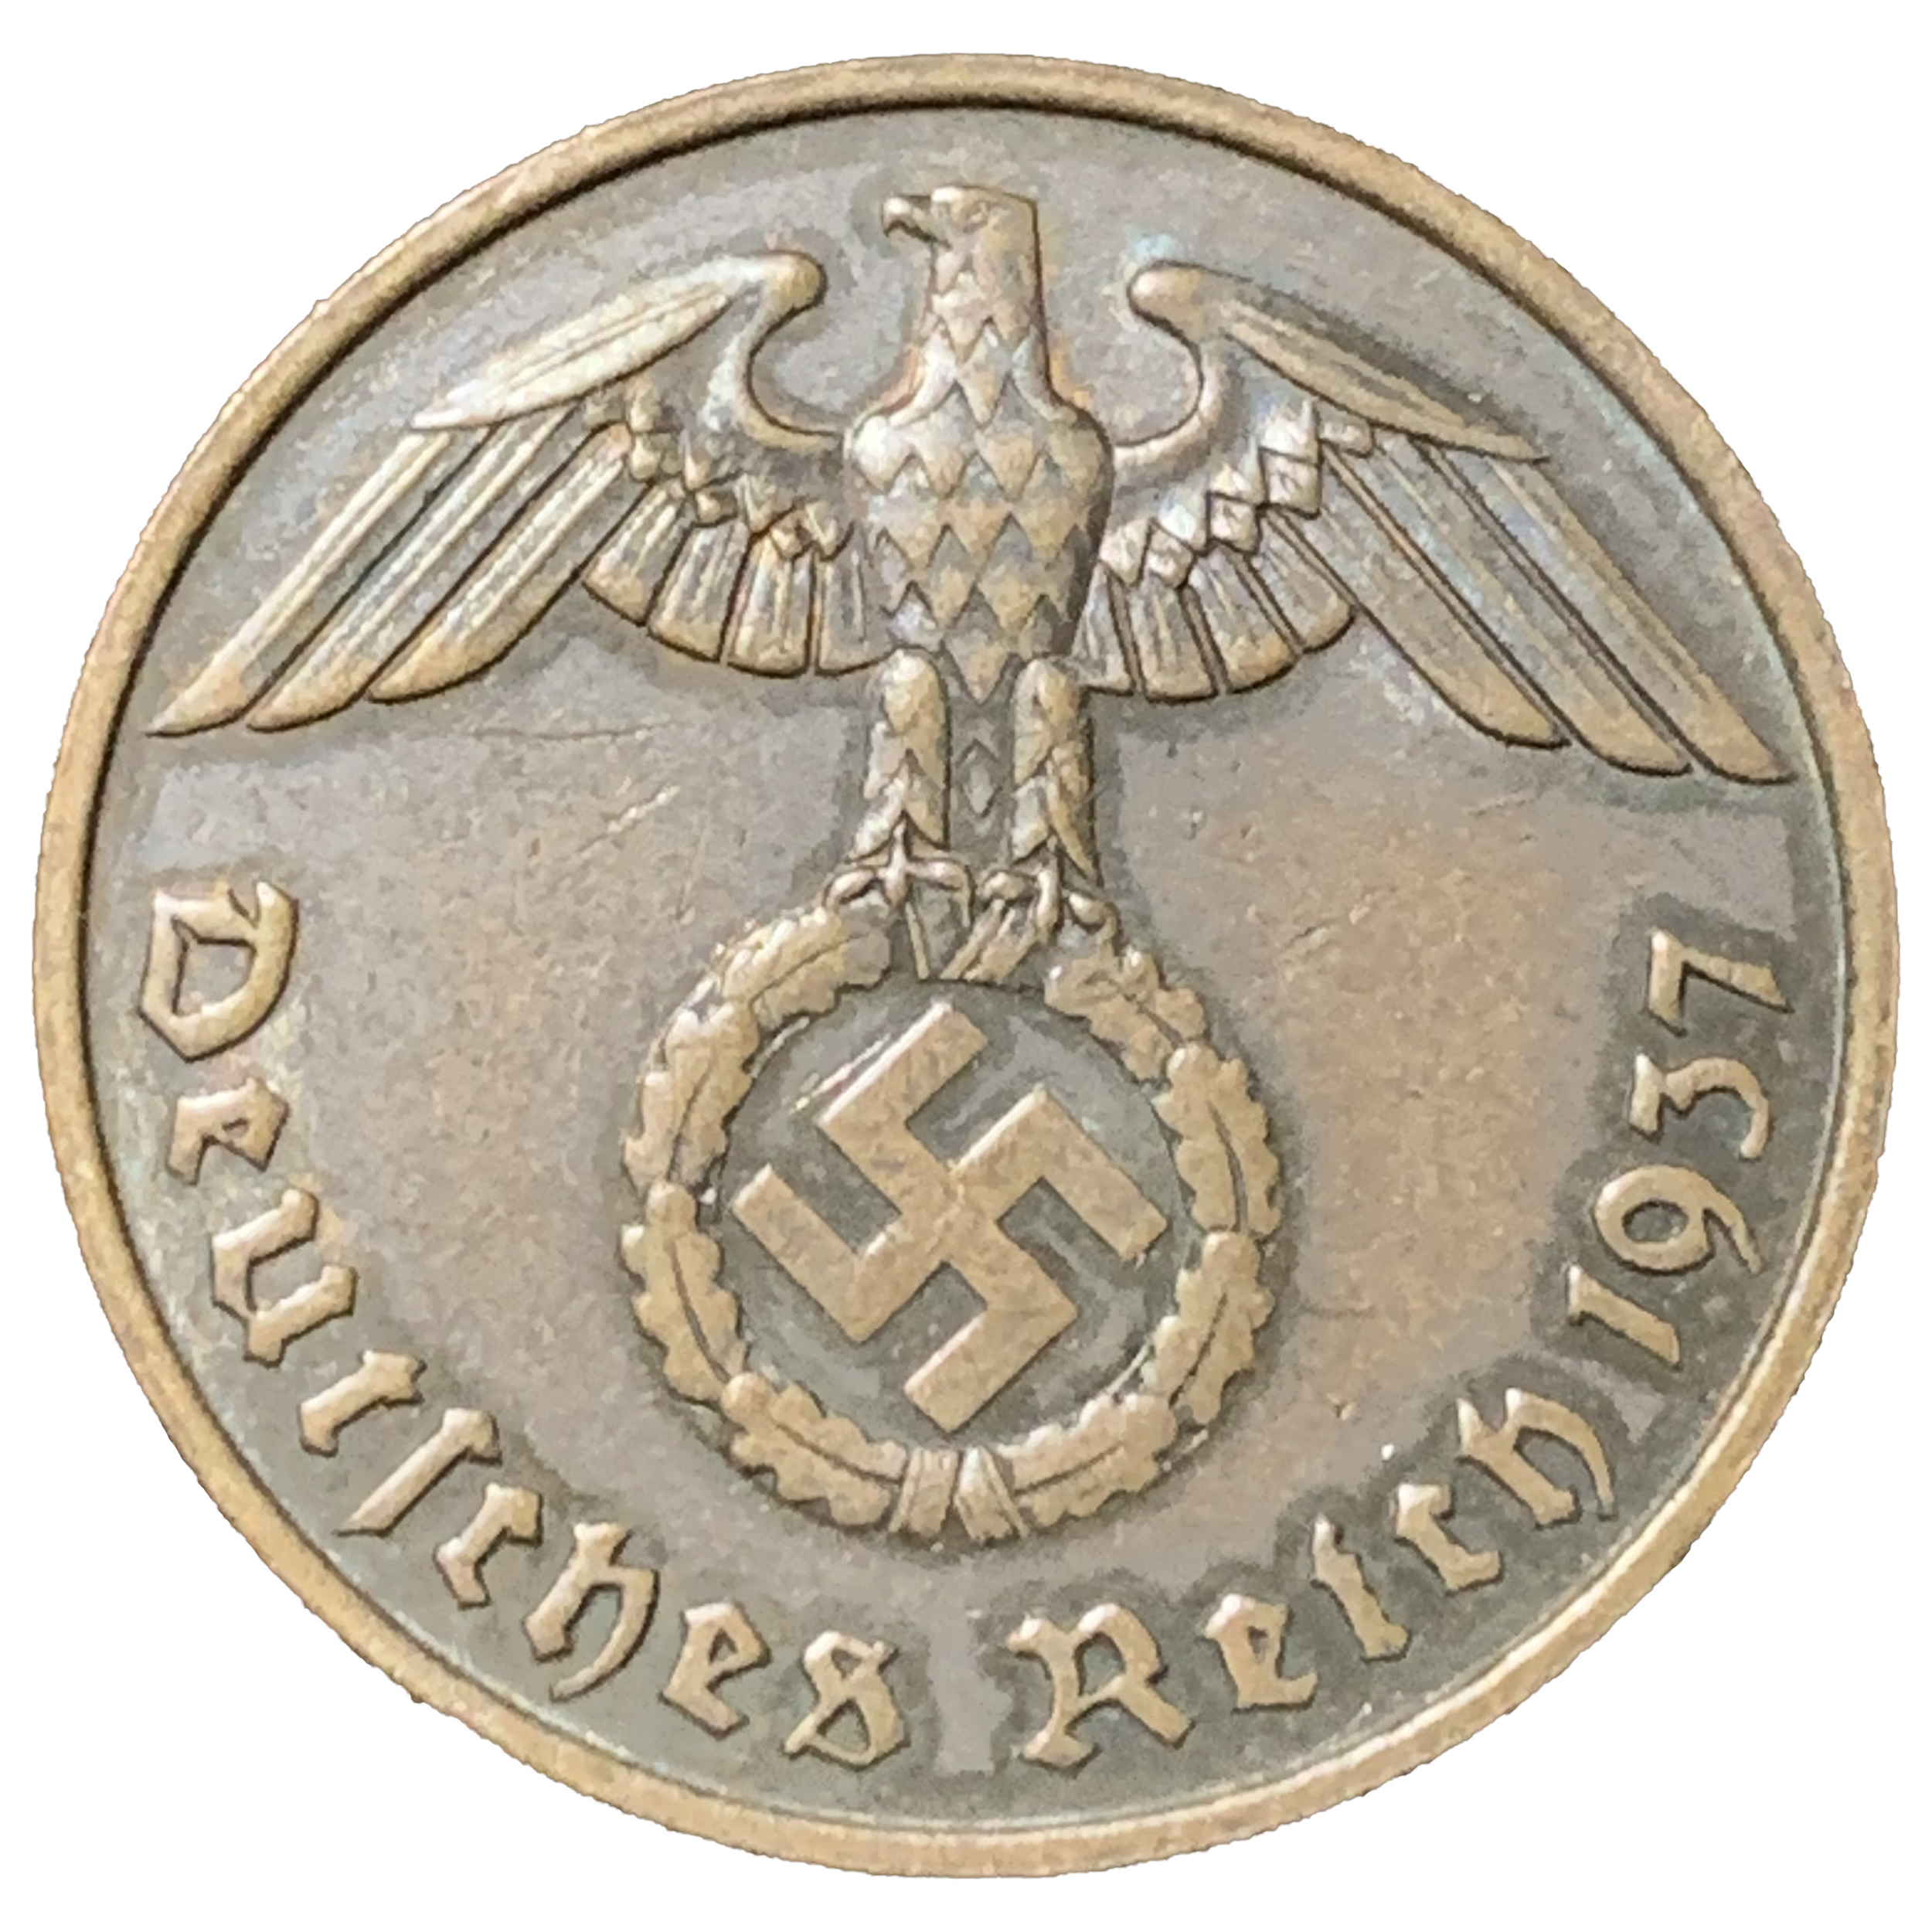 Third Reich 2 RP Reichspfennig Bronze Coin